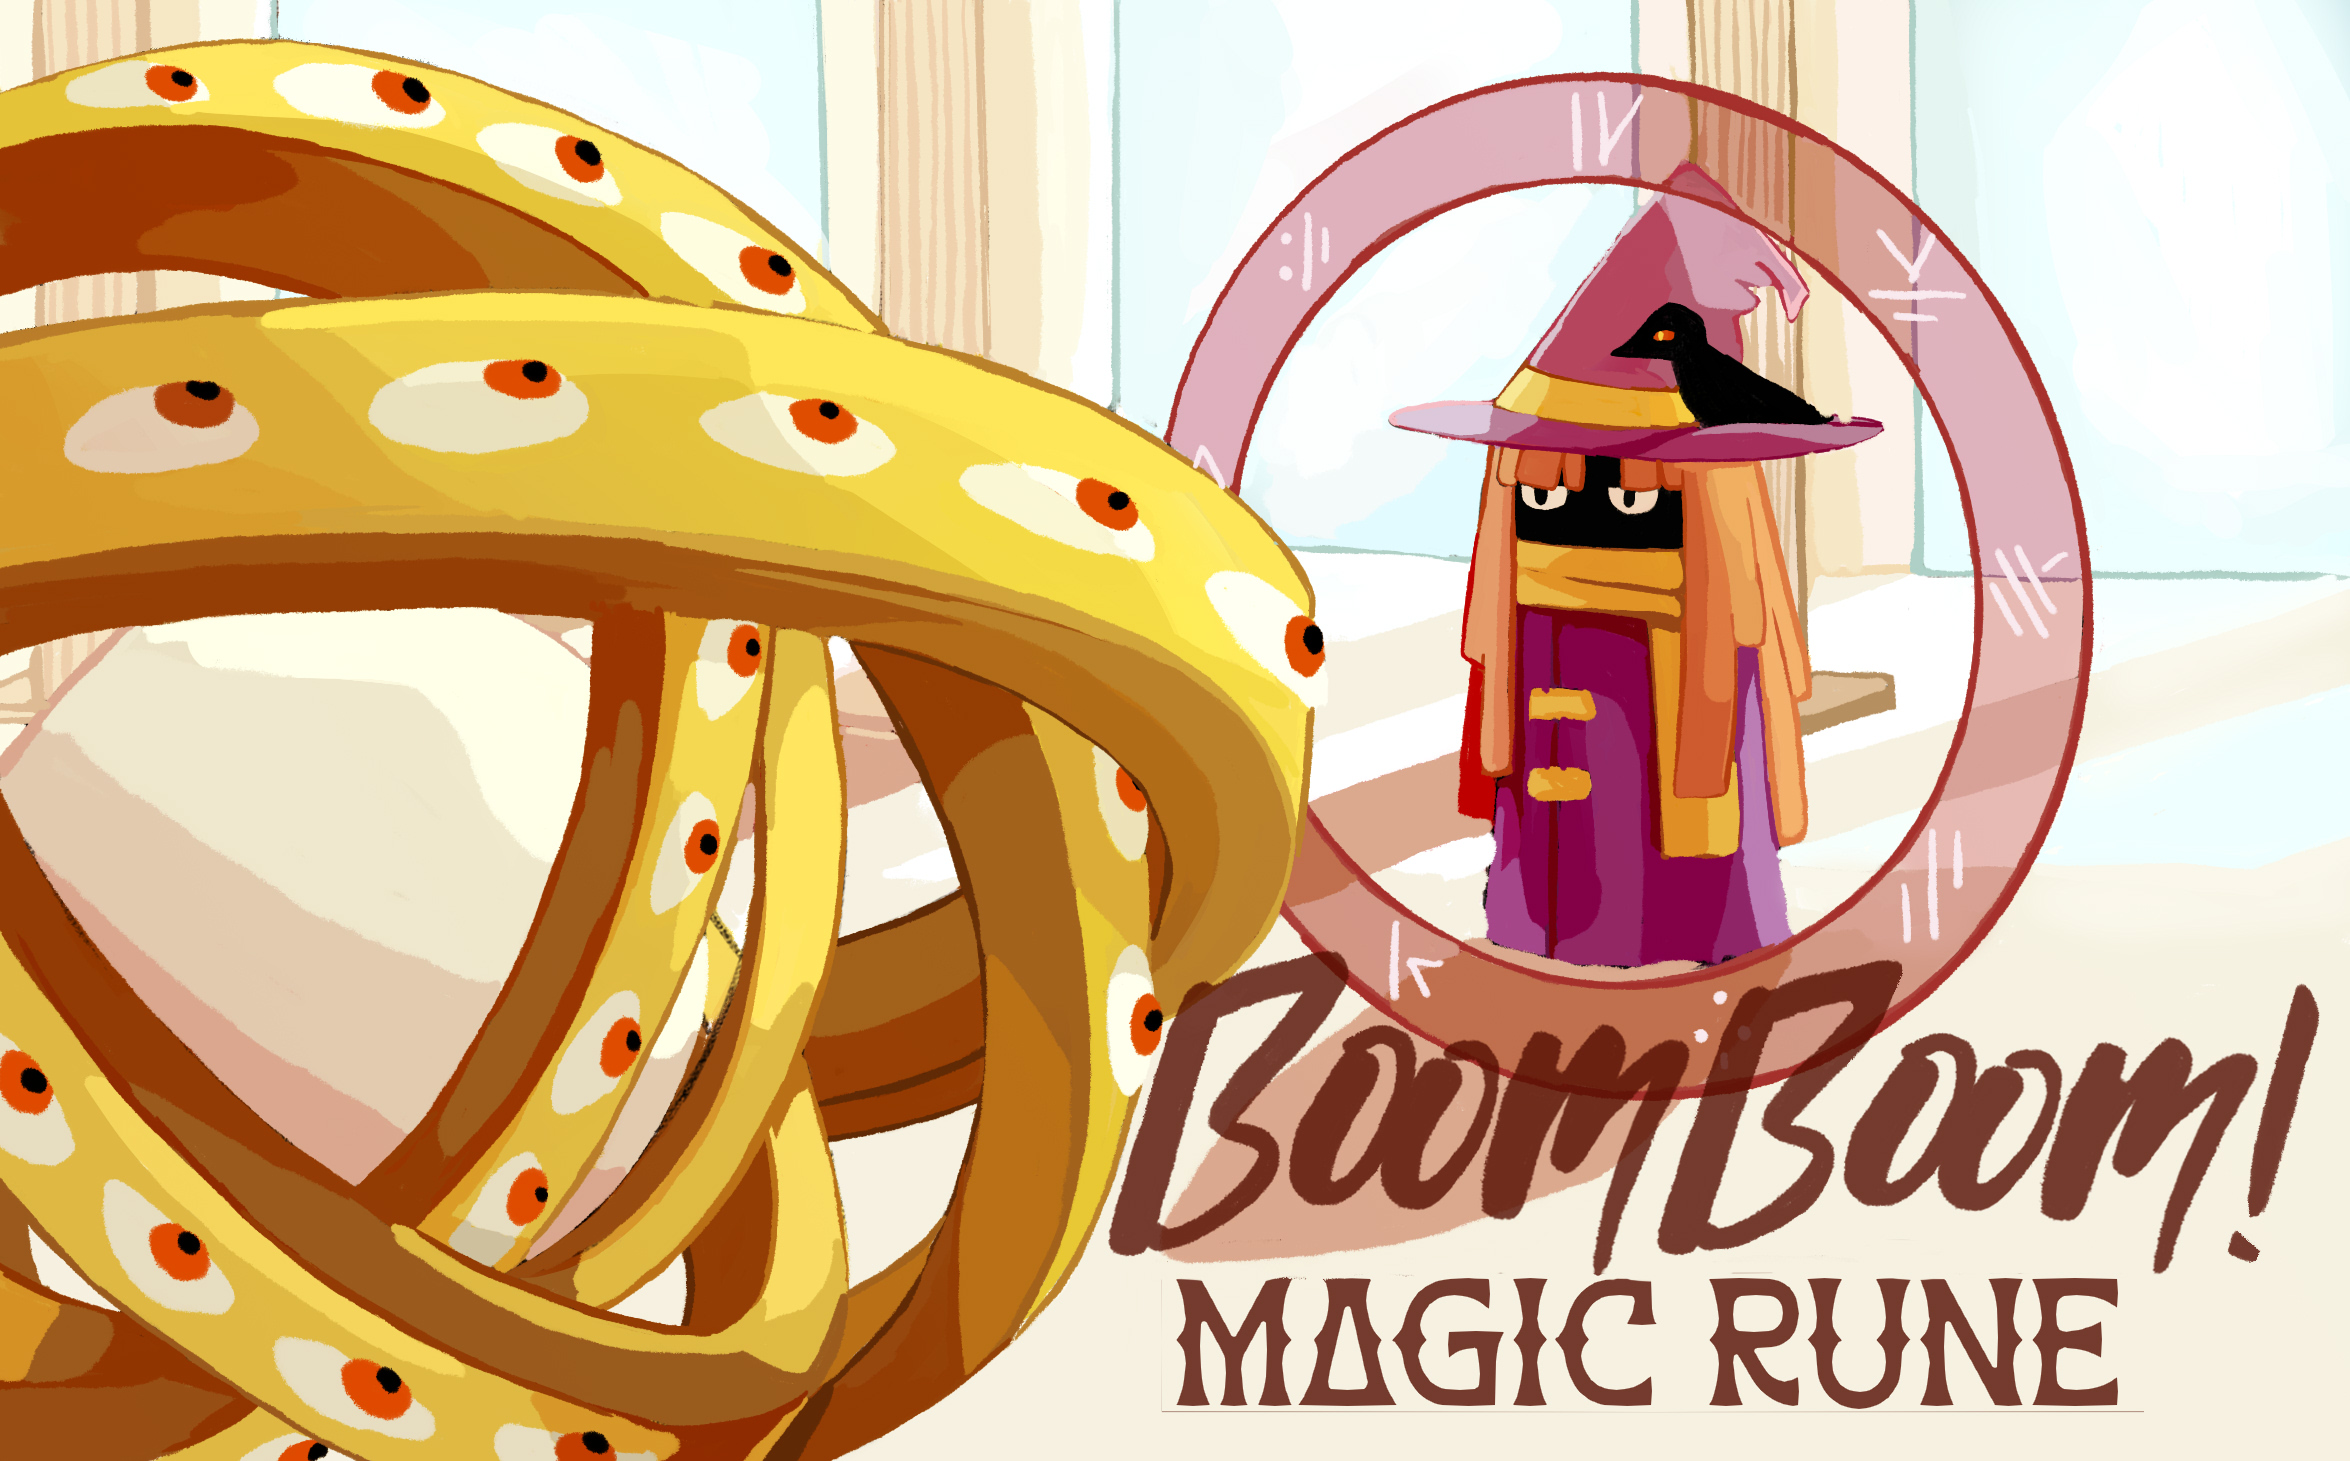 Boom Boom Magic Rune!